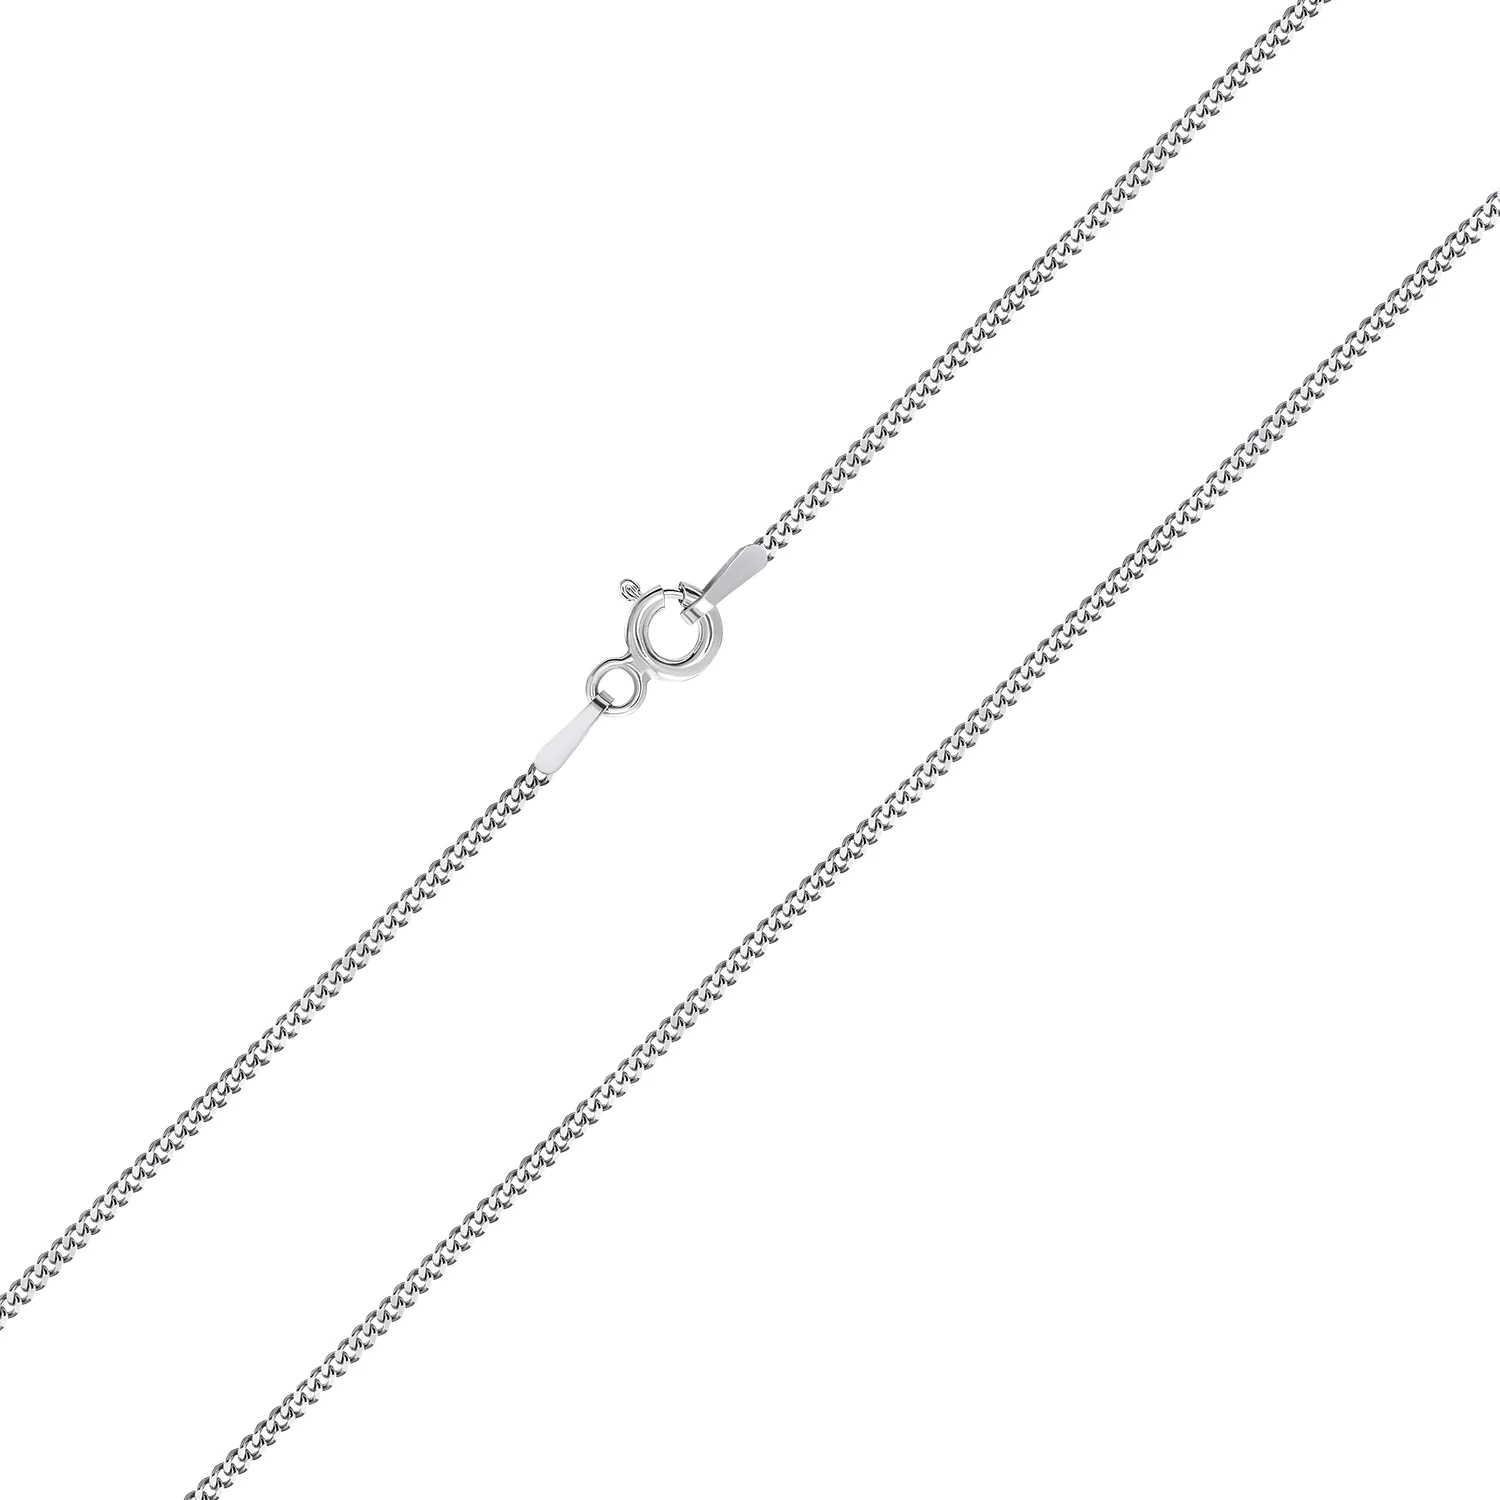 Цепочка серебряная плетение Панцирь. Артикул 7508/804Р2/45: цена, отзывы, фото – купить в интернет-магазине AURUM